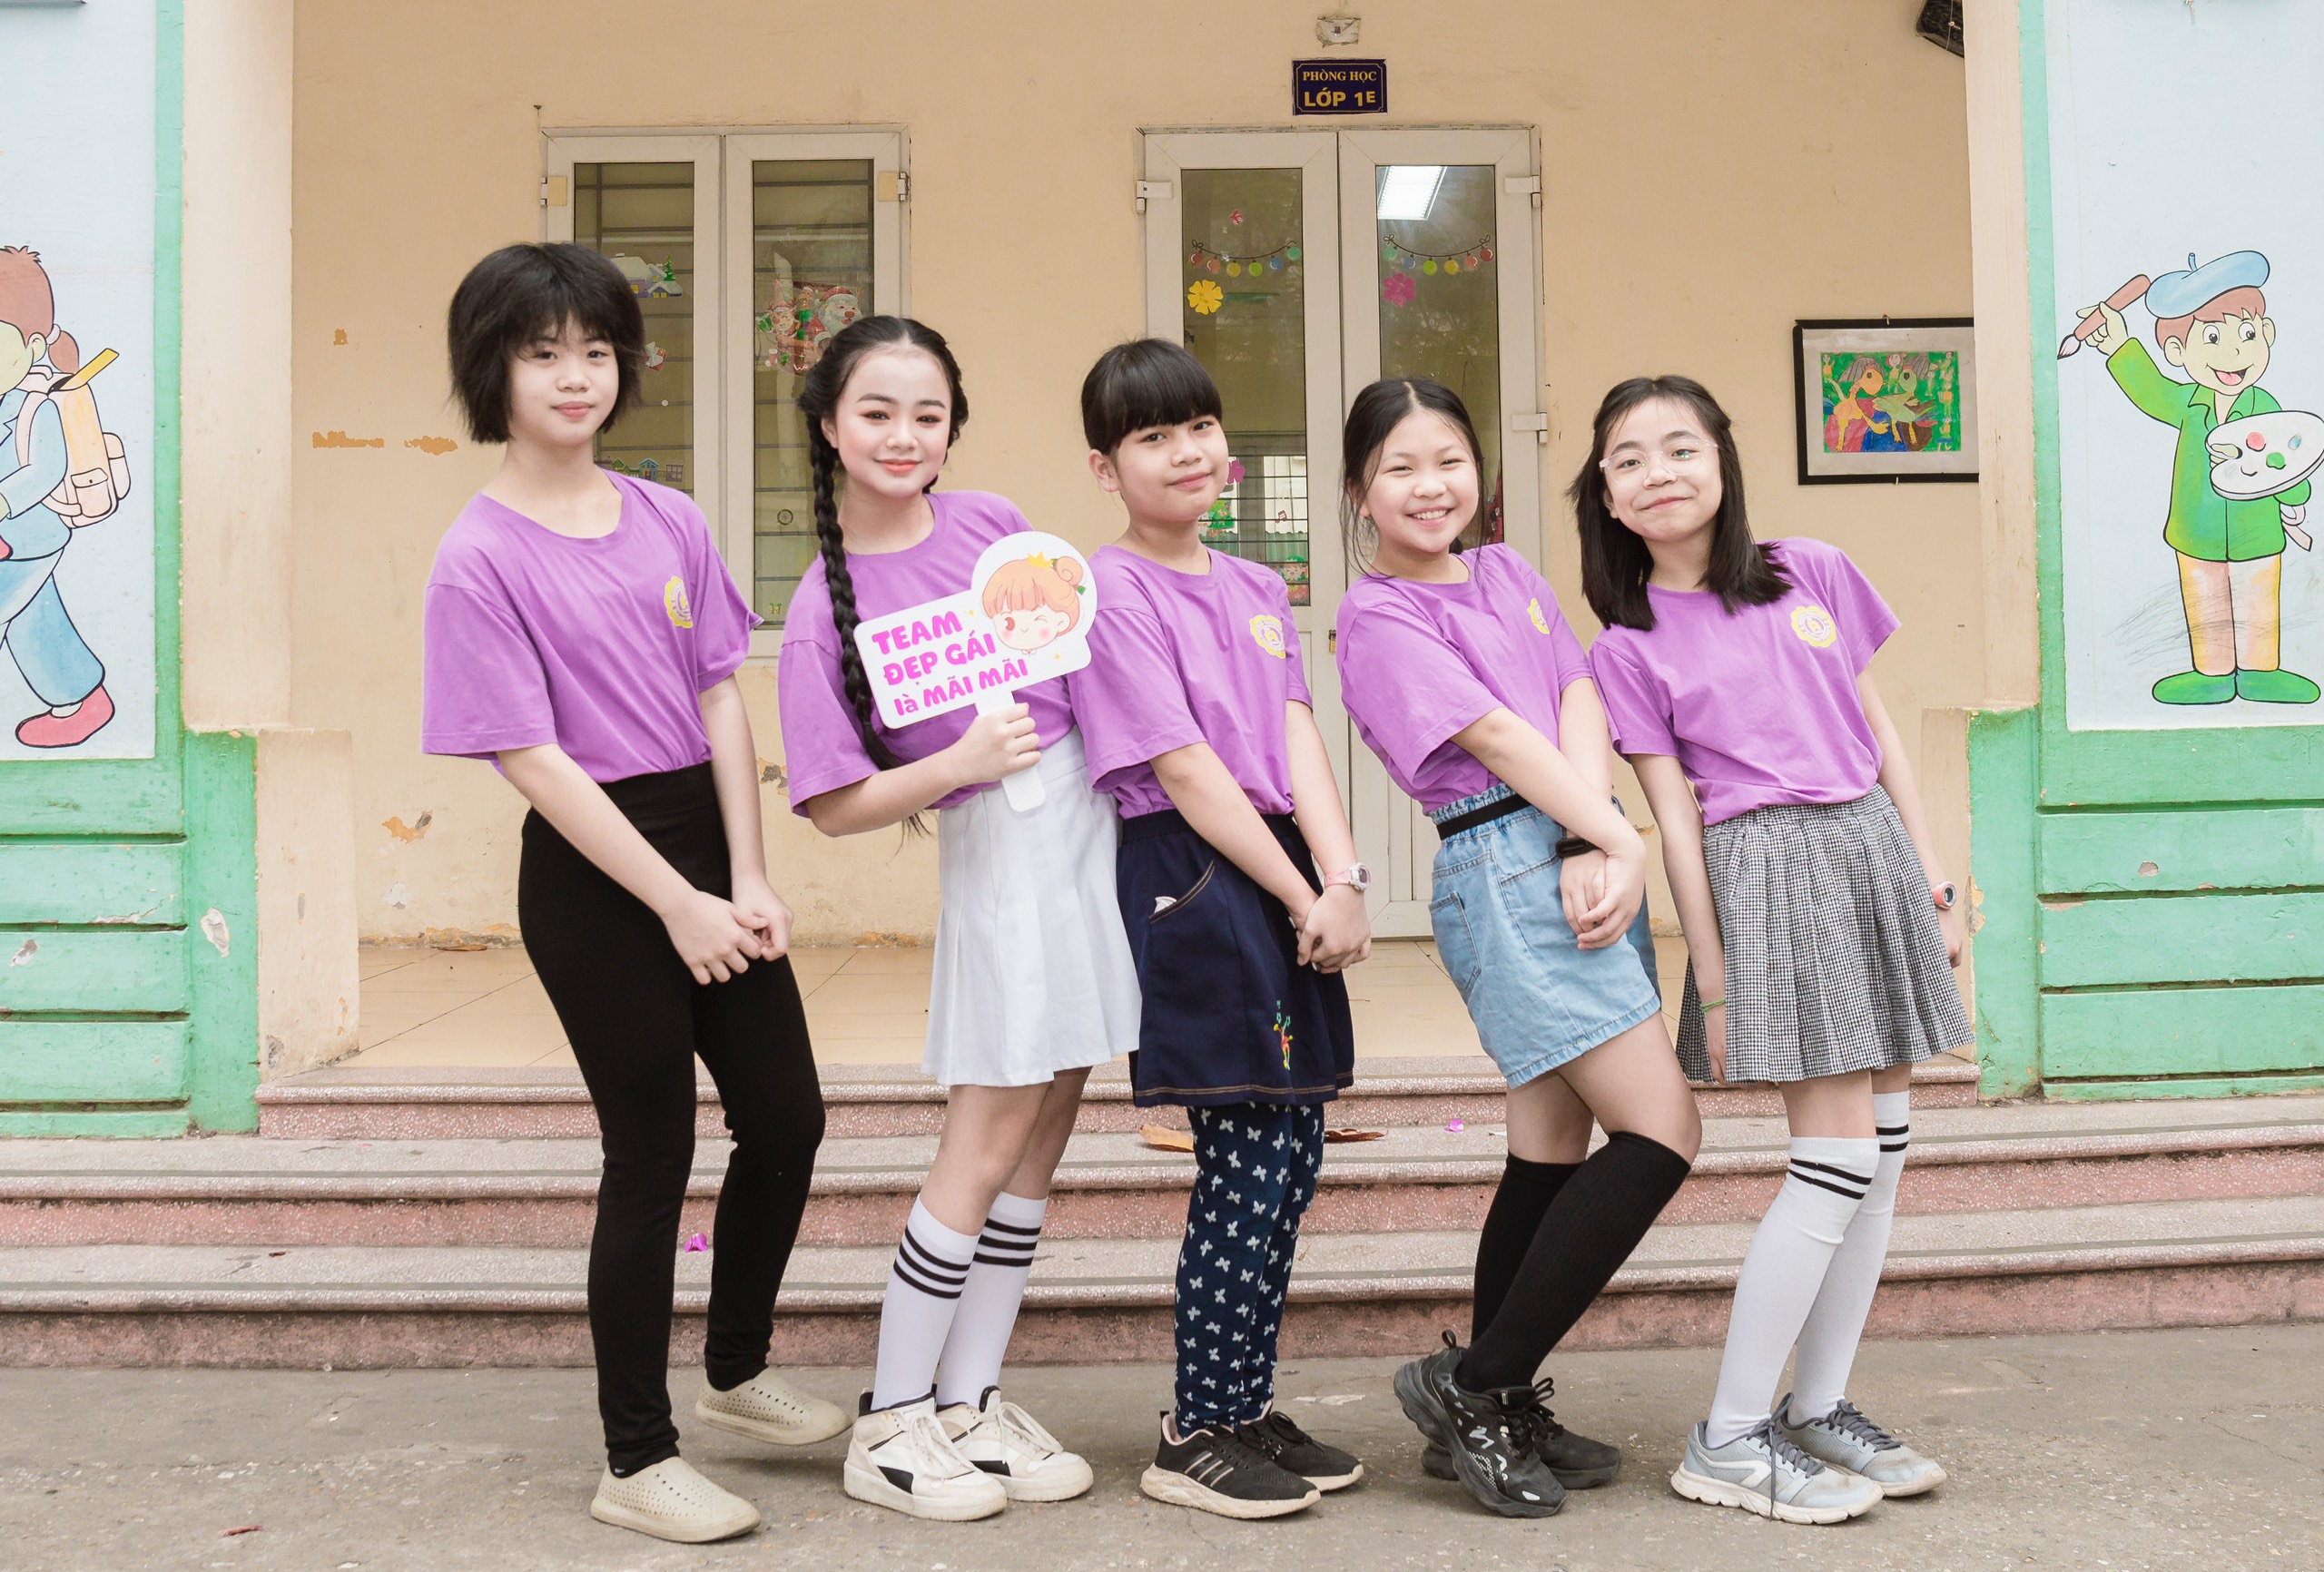 Mẫu teen Maika Ngọc Khánh tri ân thầy cô bằng bộ ảnh cực 'cool' 